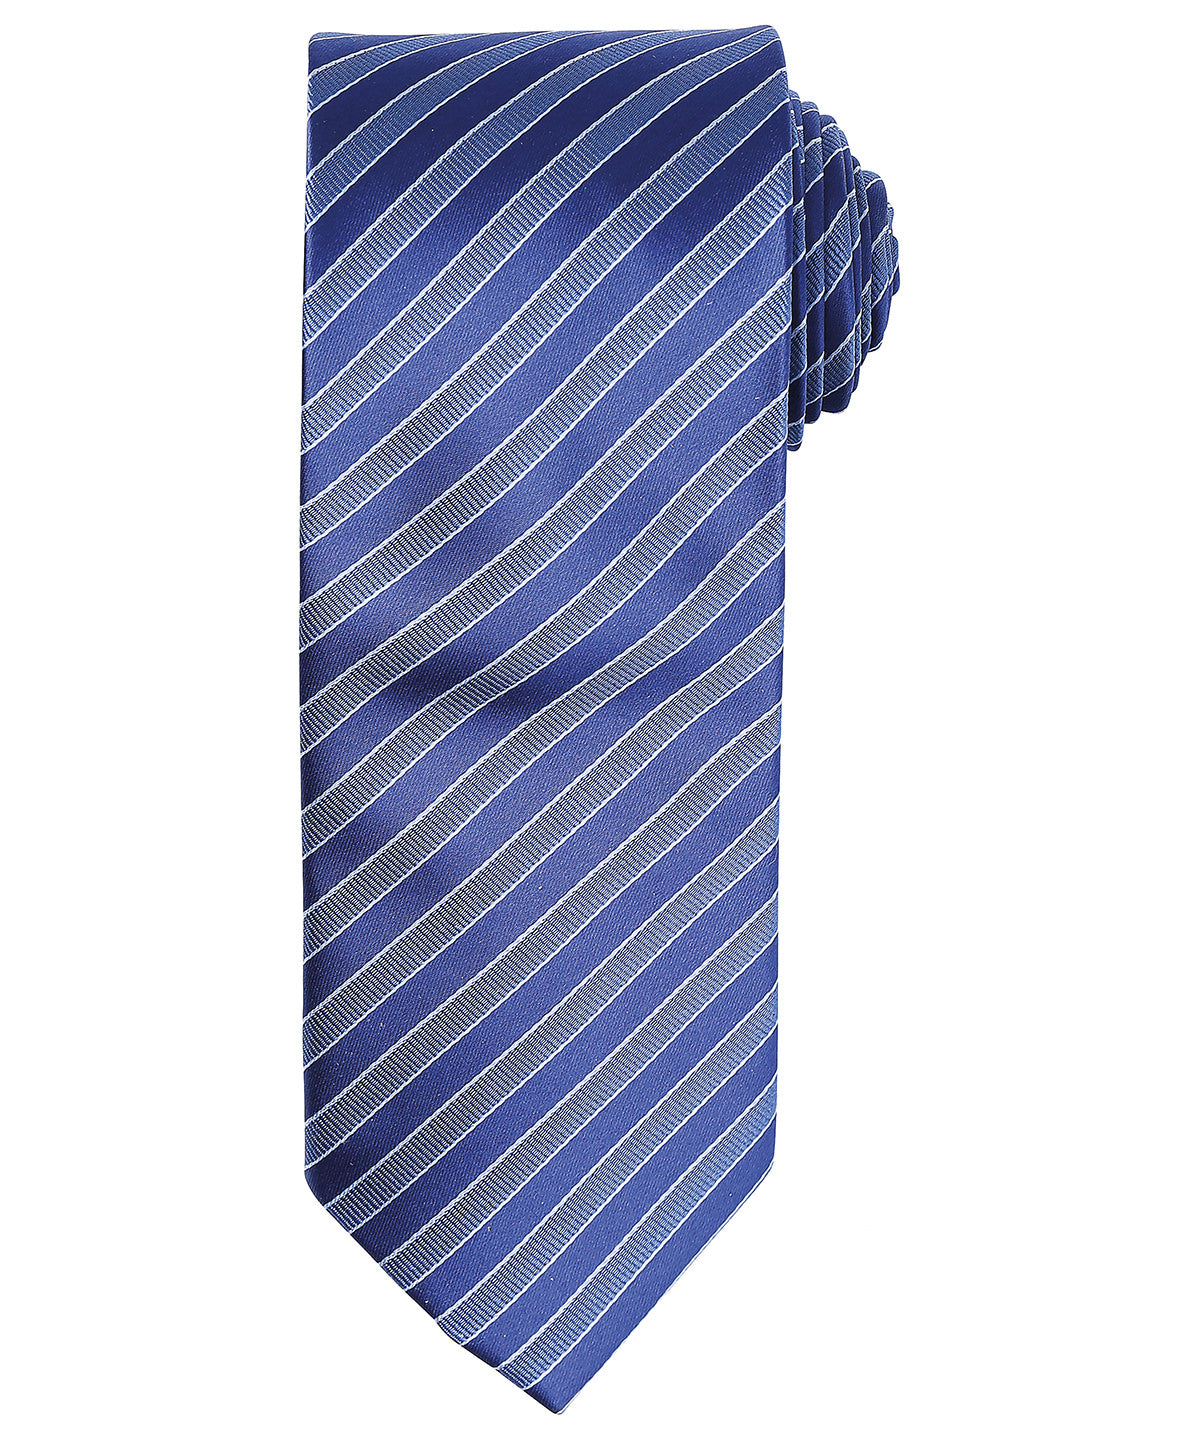 Double stripe tie - Premier Collection